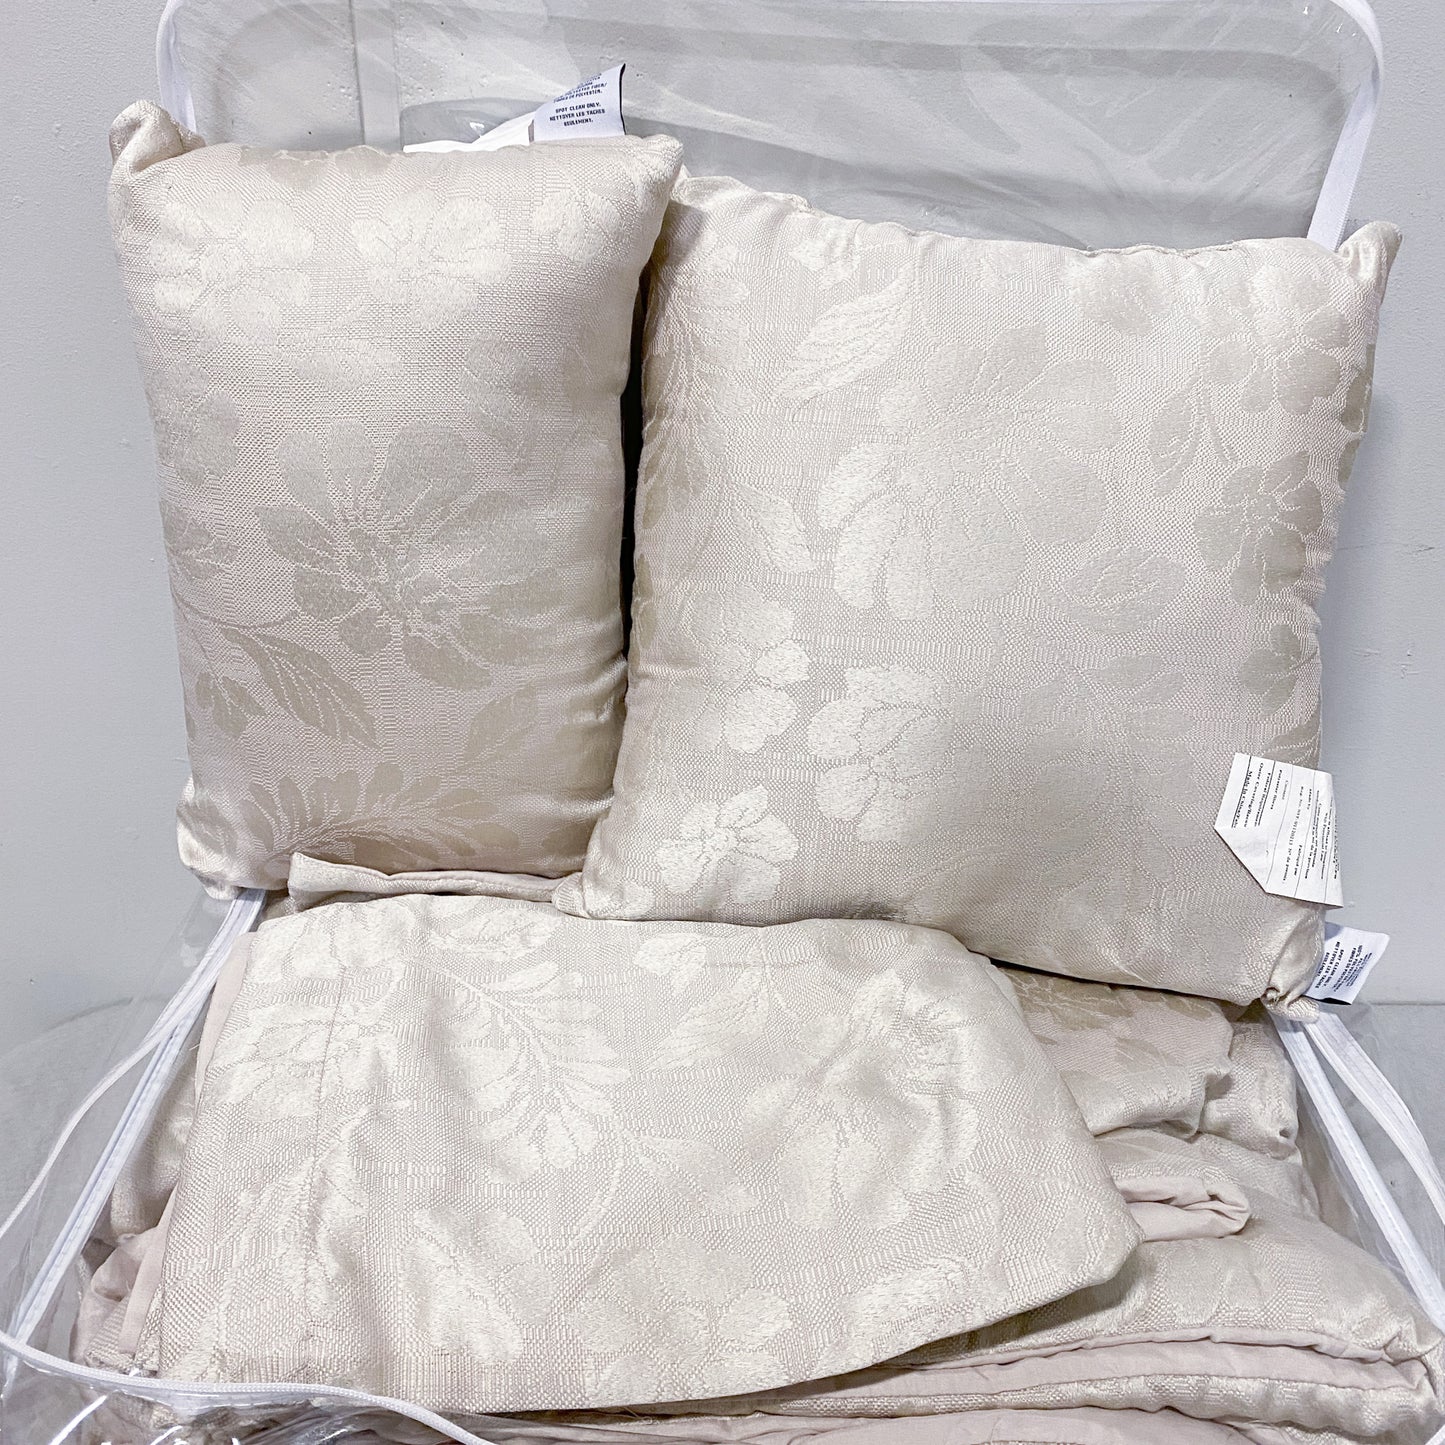 Brocade Cream Queen Bed Set